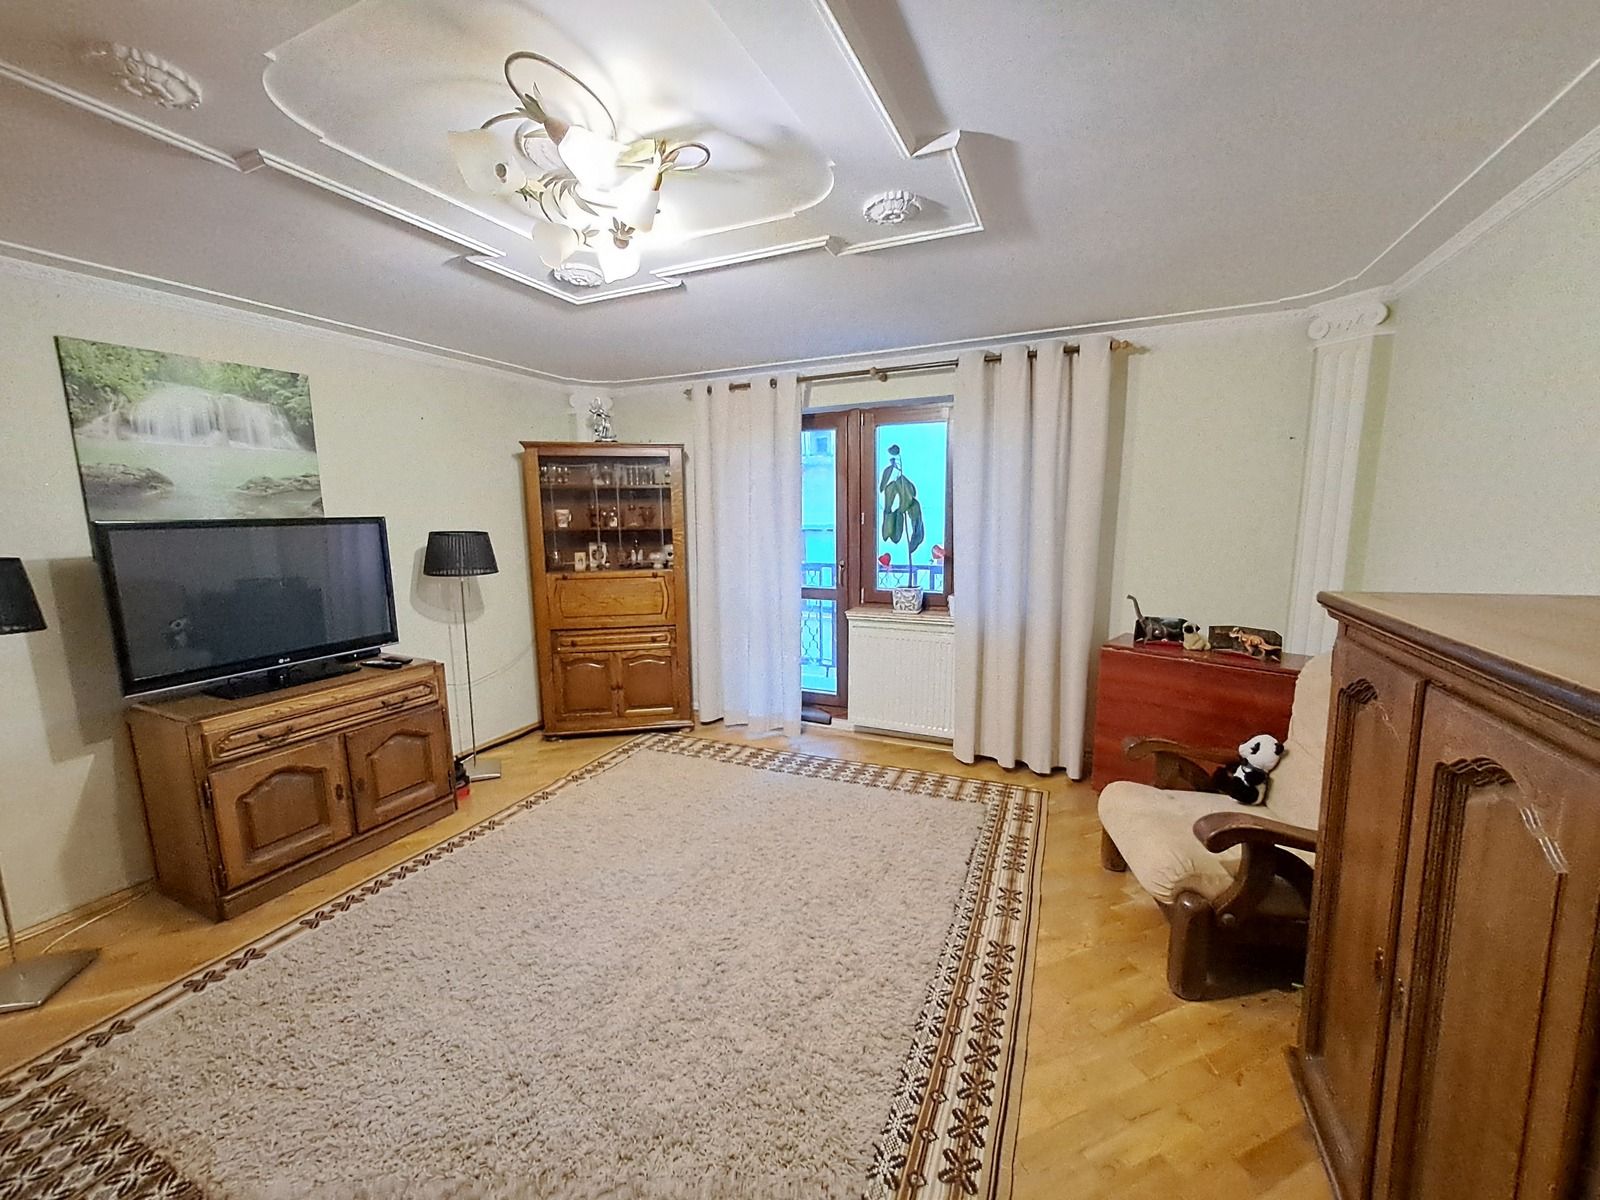 Оренда частини приватного будинку в с.Петриків, Тернопільський район.